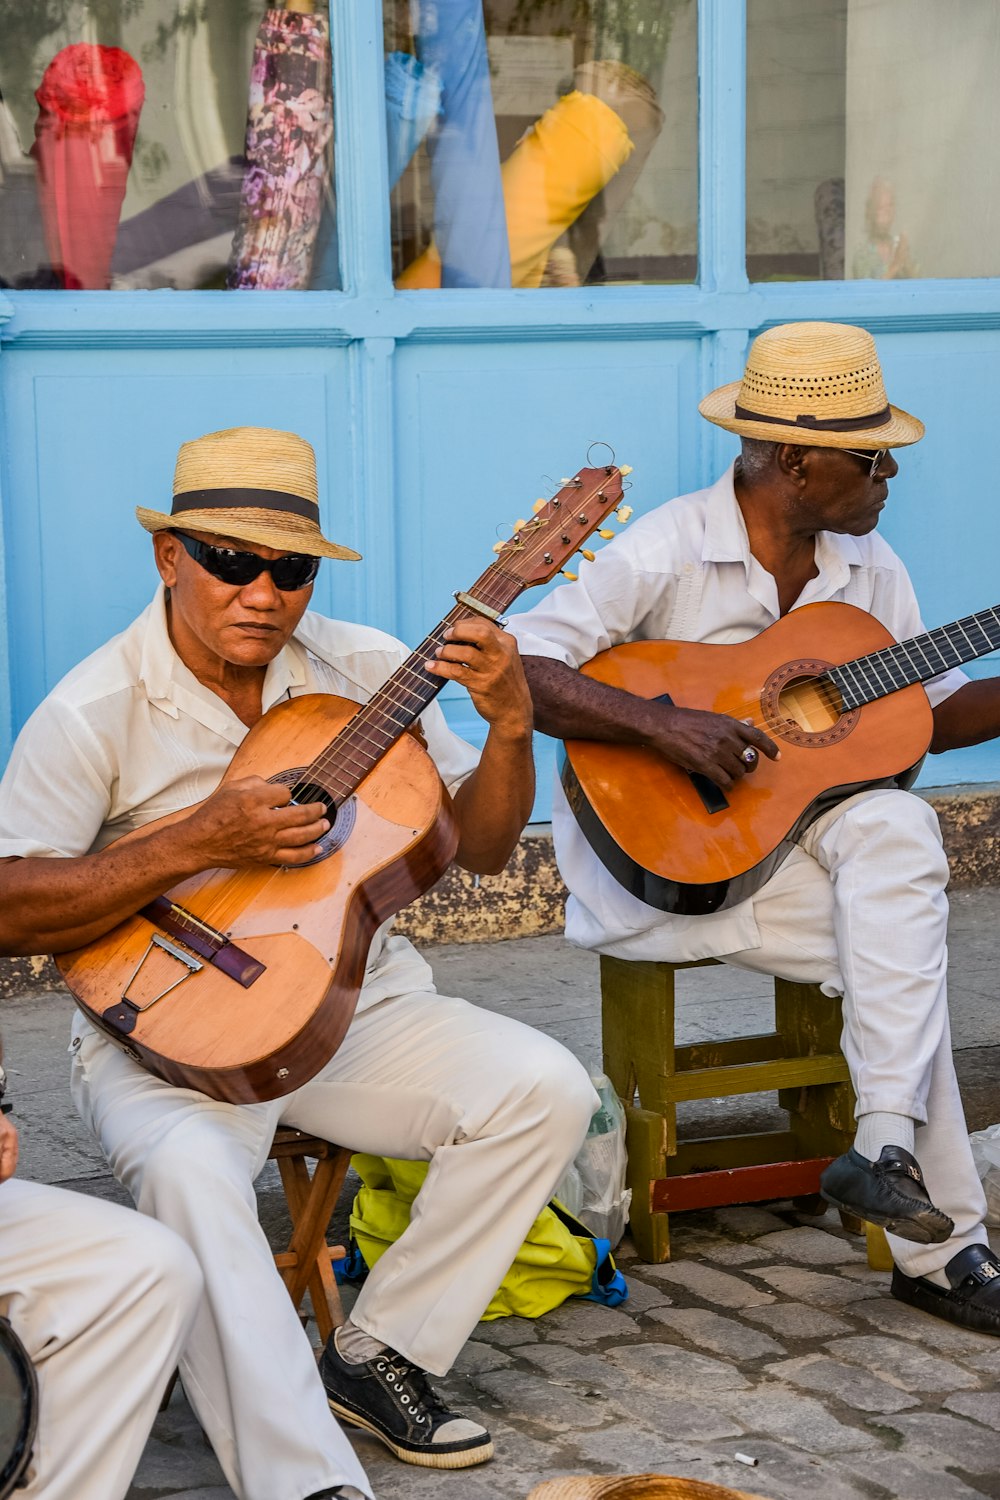 Zwei Männer, die auf einer Bank sitzen und Gitarre spielen